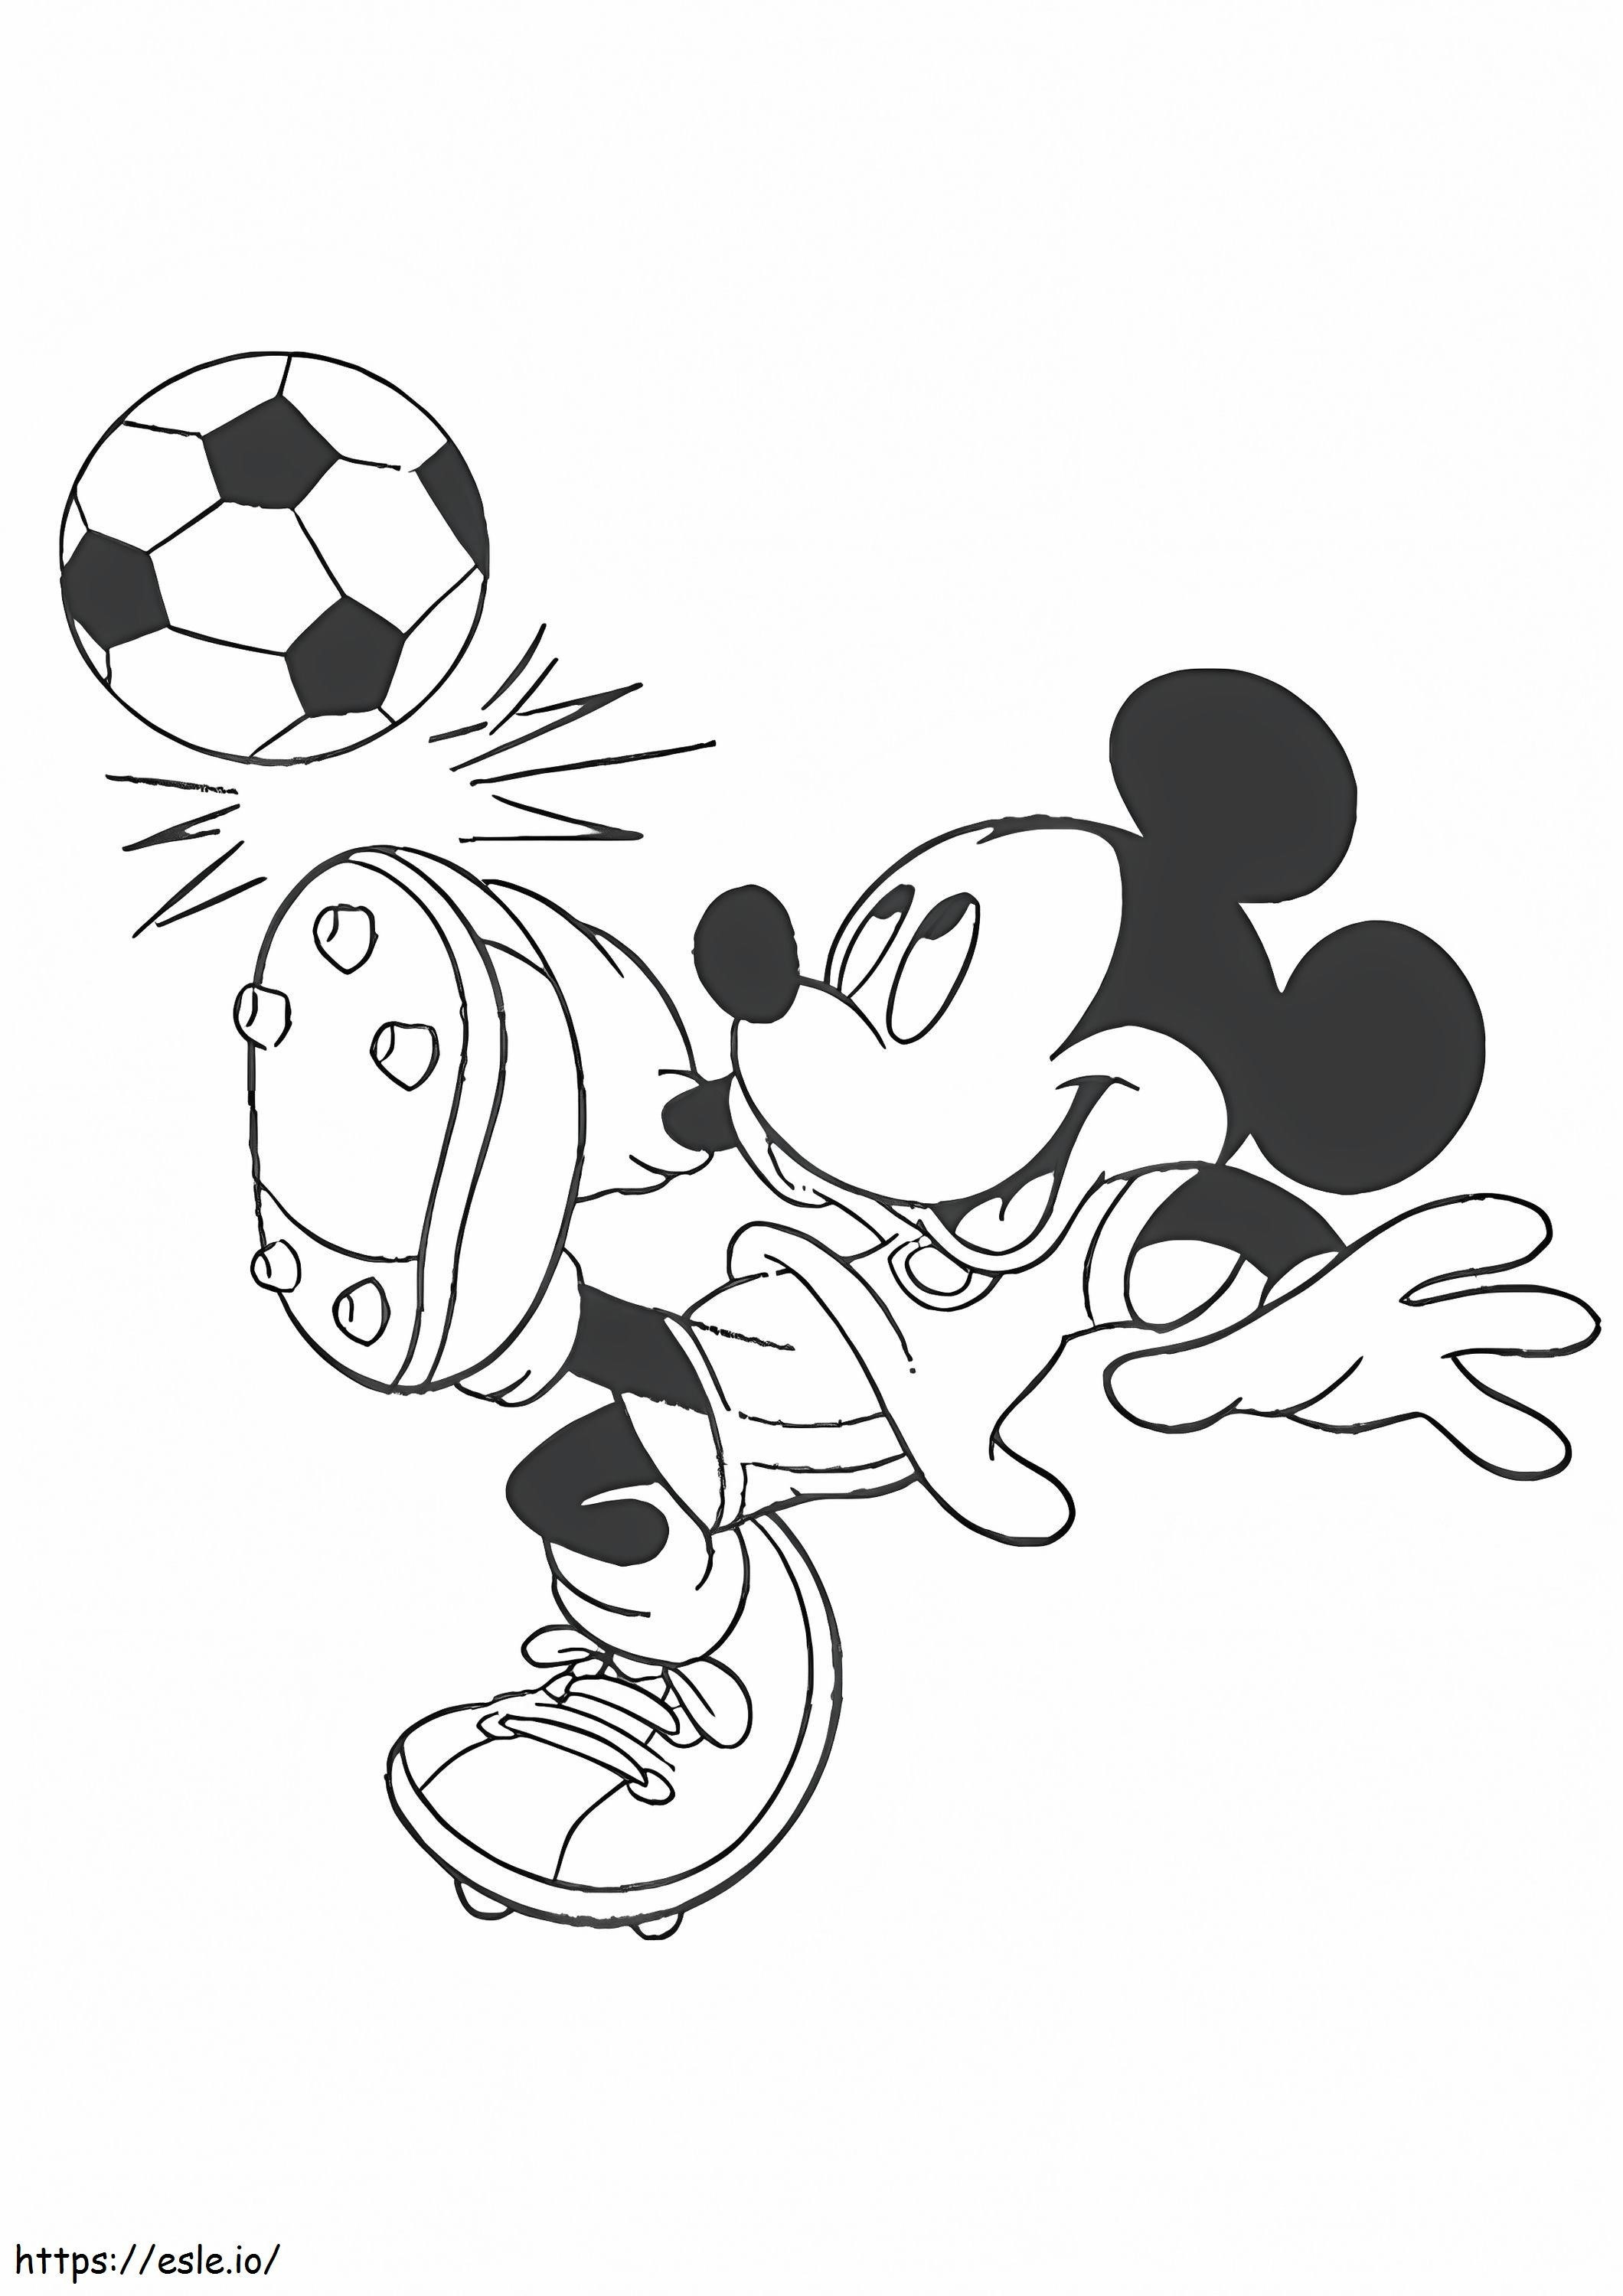 1526549923 De Mickey Mouse De voetballer A4 kleurplaat kleurplaat